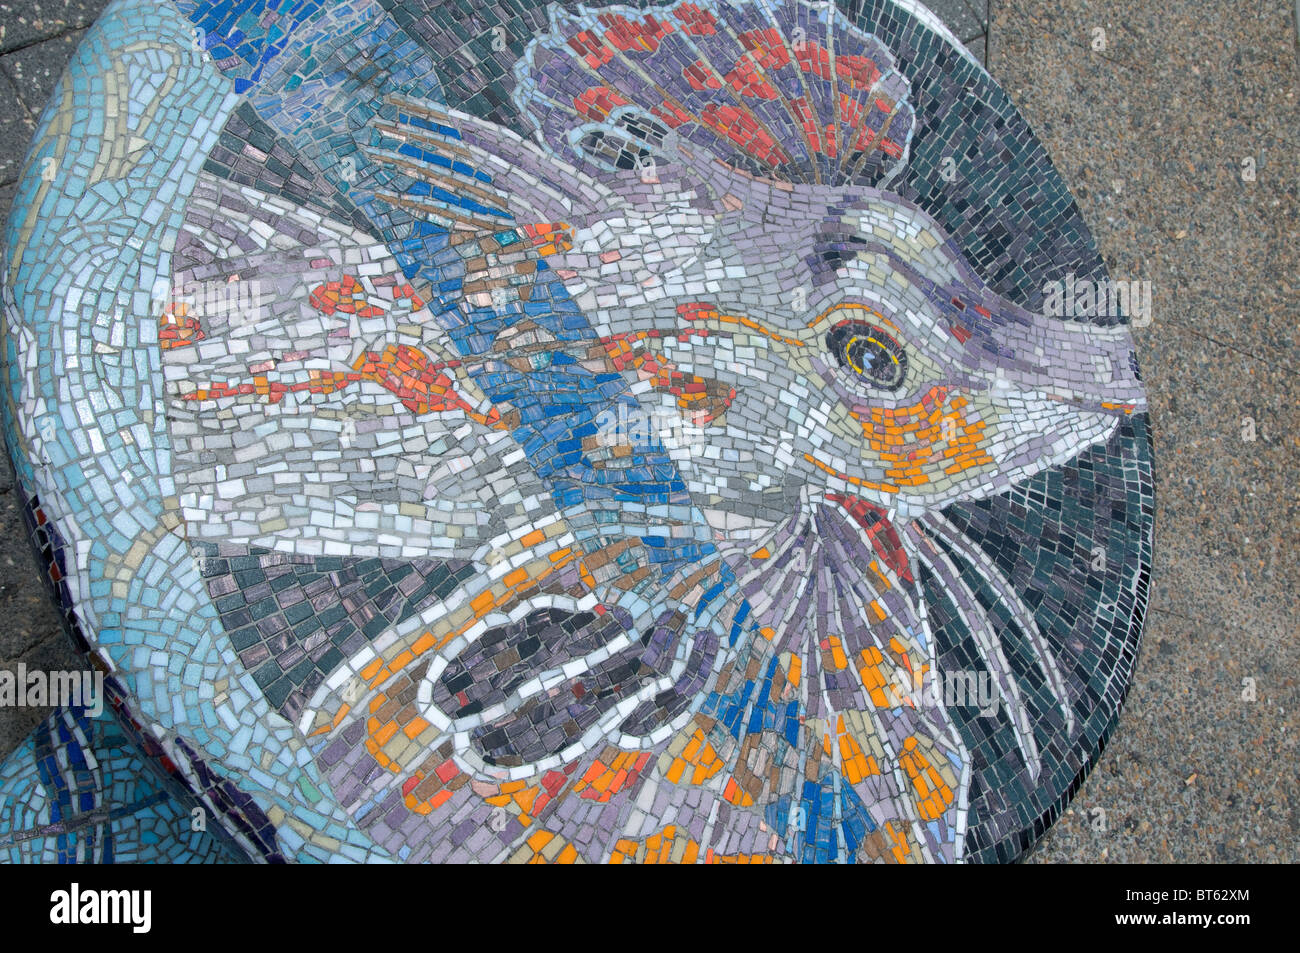 Pesce di mare vita marina mosaico di arte pubblica craft navigare navigare texture di onde marine acqua blu Australia emisfero sud Aussi Foto Stock